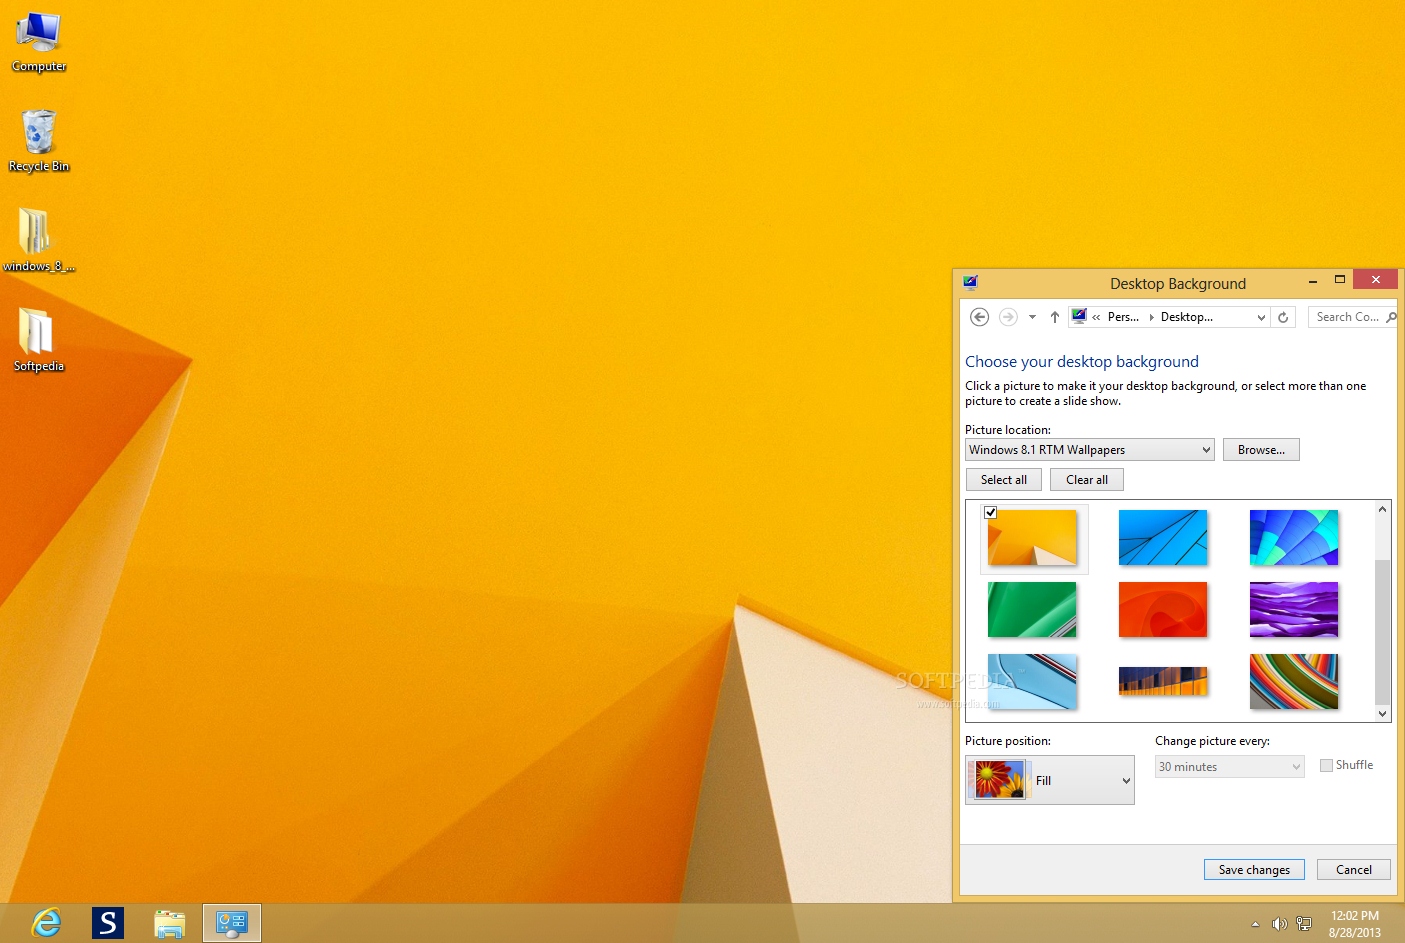 Tải về bộ sưu tập hình nền Windows 8.1 RTM đầy màu sắc và quyến rũ này để khiến cho màn hình của bạn trở nên sang trọng và độc đáo. Hãy chọn hình ảnh mà bạn yêu thích nhất và đổi mới không gian làm việc của bạn.